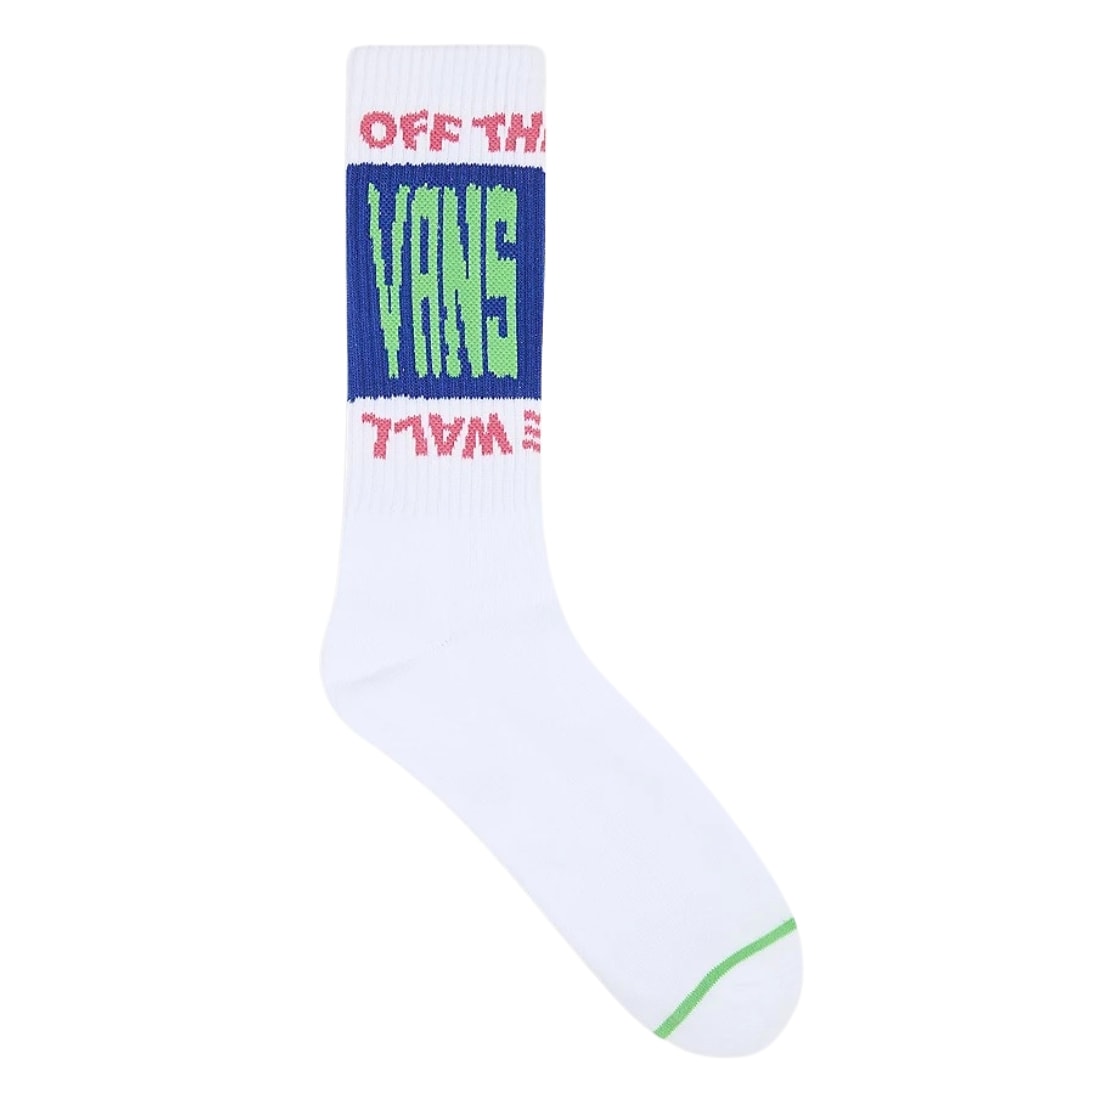 Vans Whammy Crew Socks - White - Mens Crew Length Socks by Vans